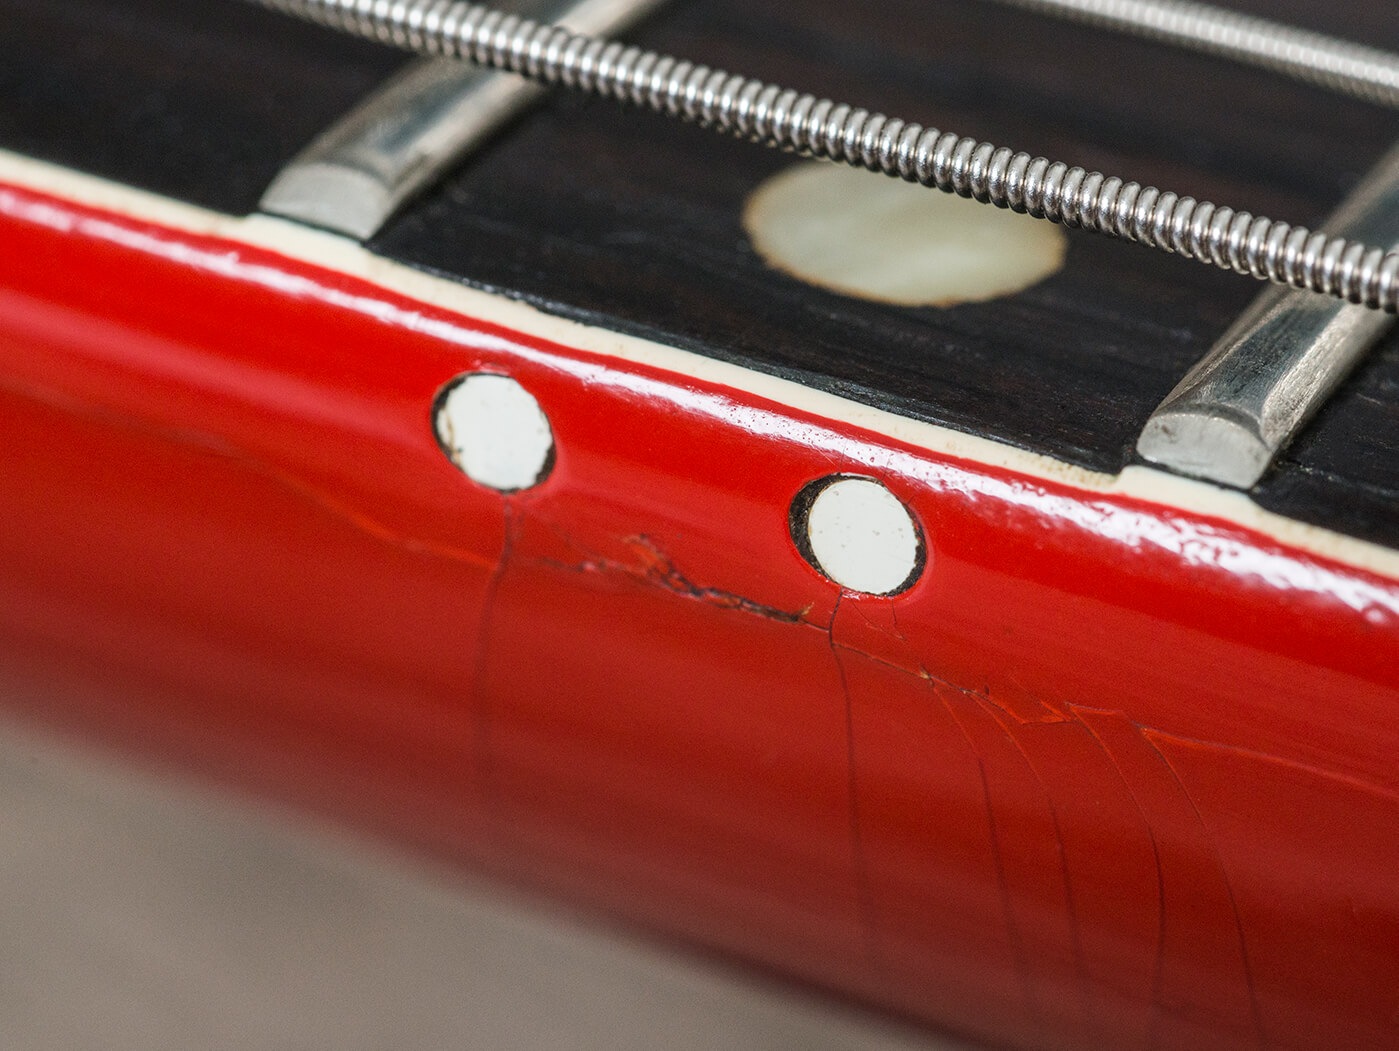 Gibson 1964 Firebird III red 12-fret dot-marker